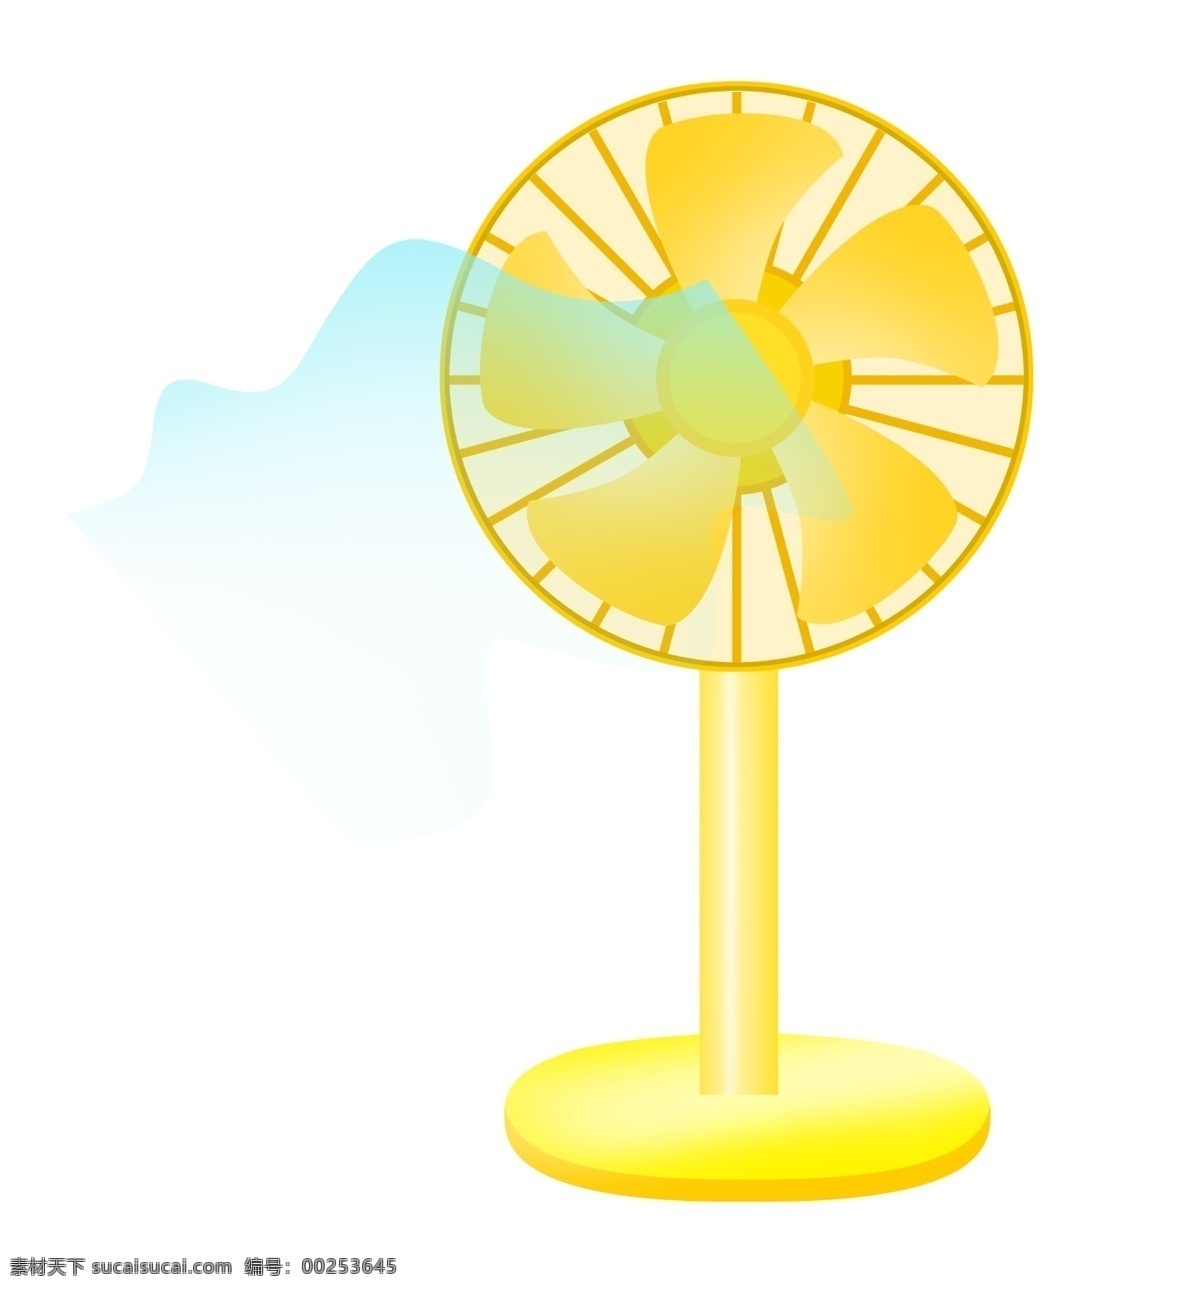 小家电 夏季 电扇 插画 黄色风扇 夏季电器